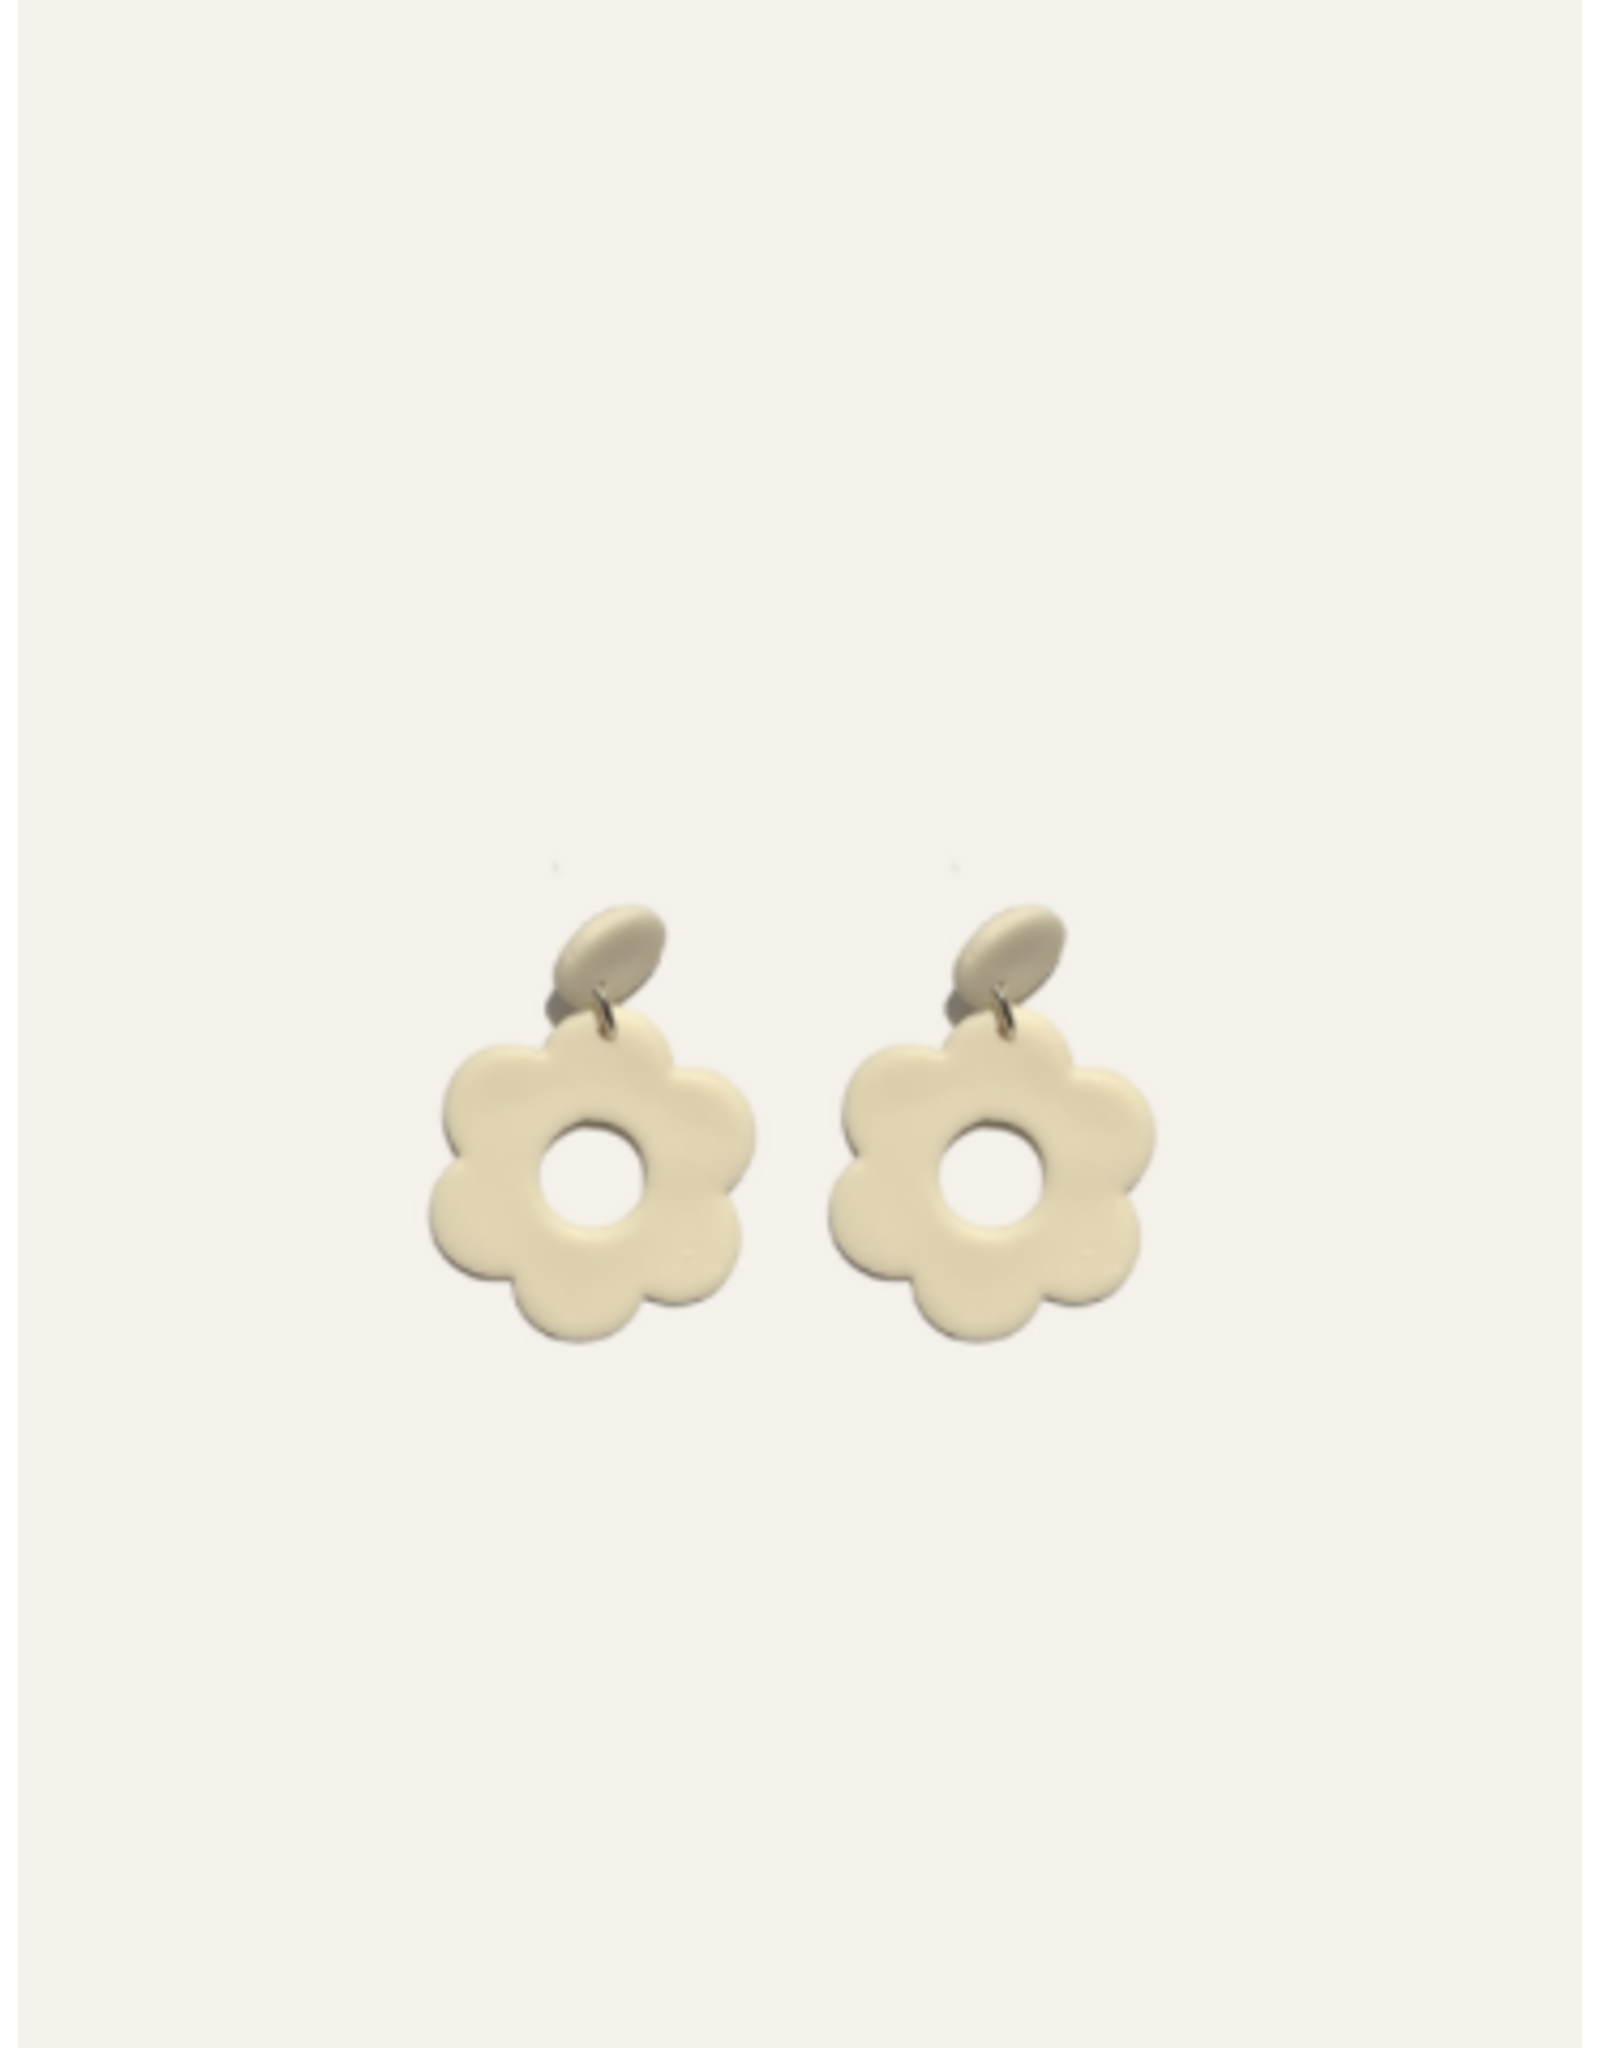 Clay Floral Earrings - Bone